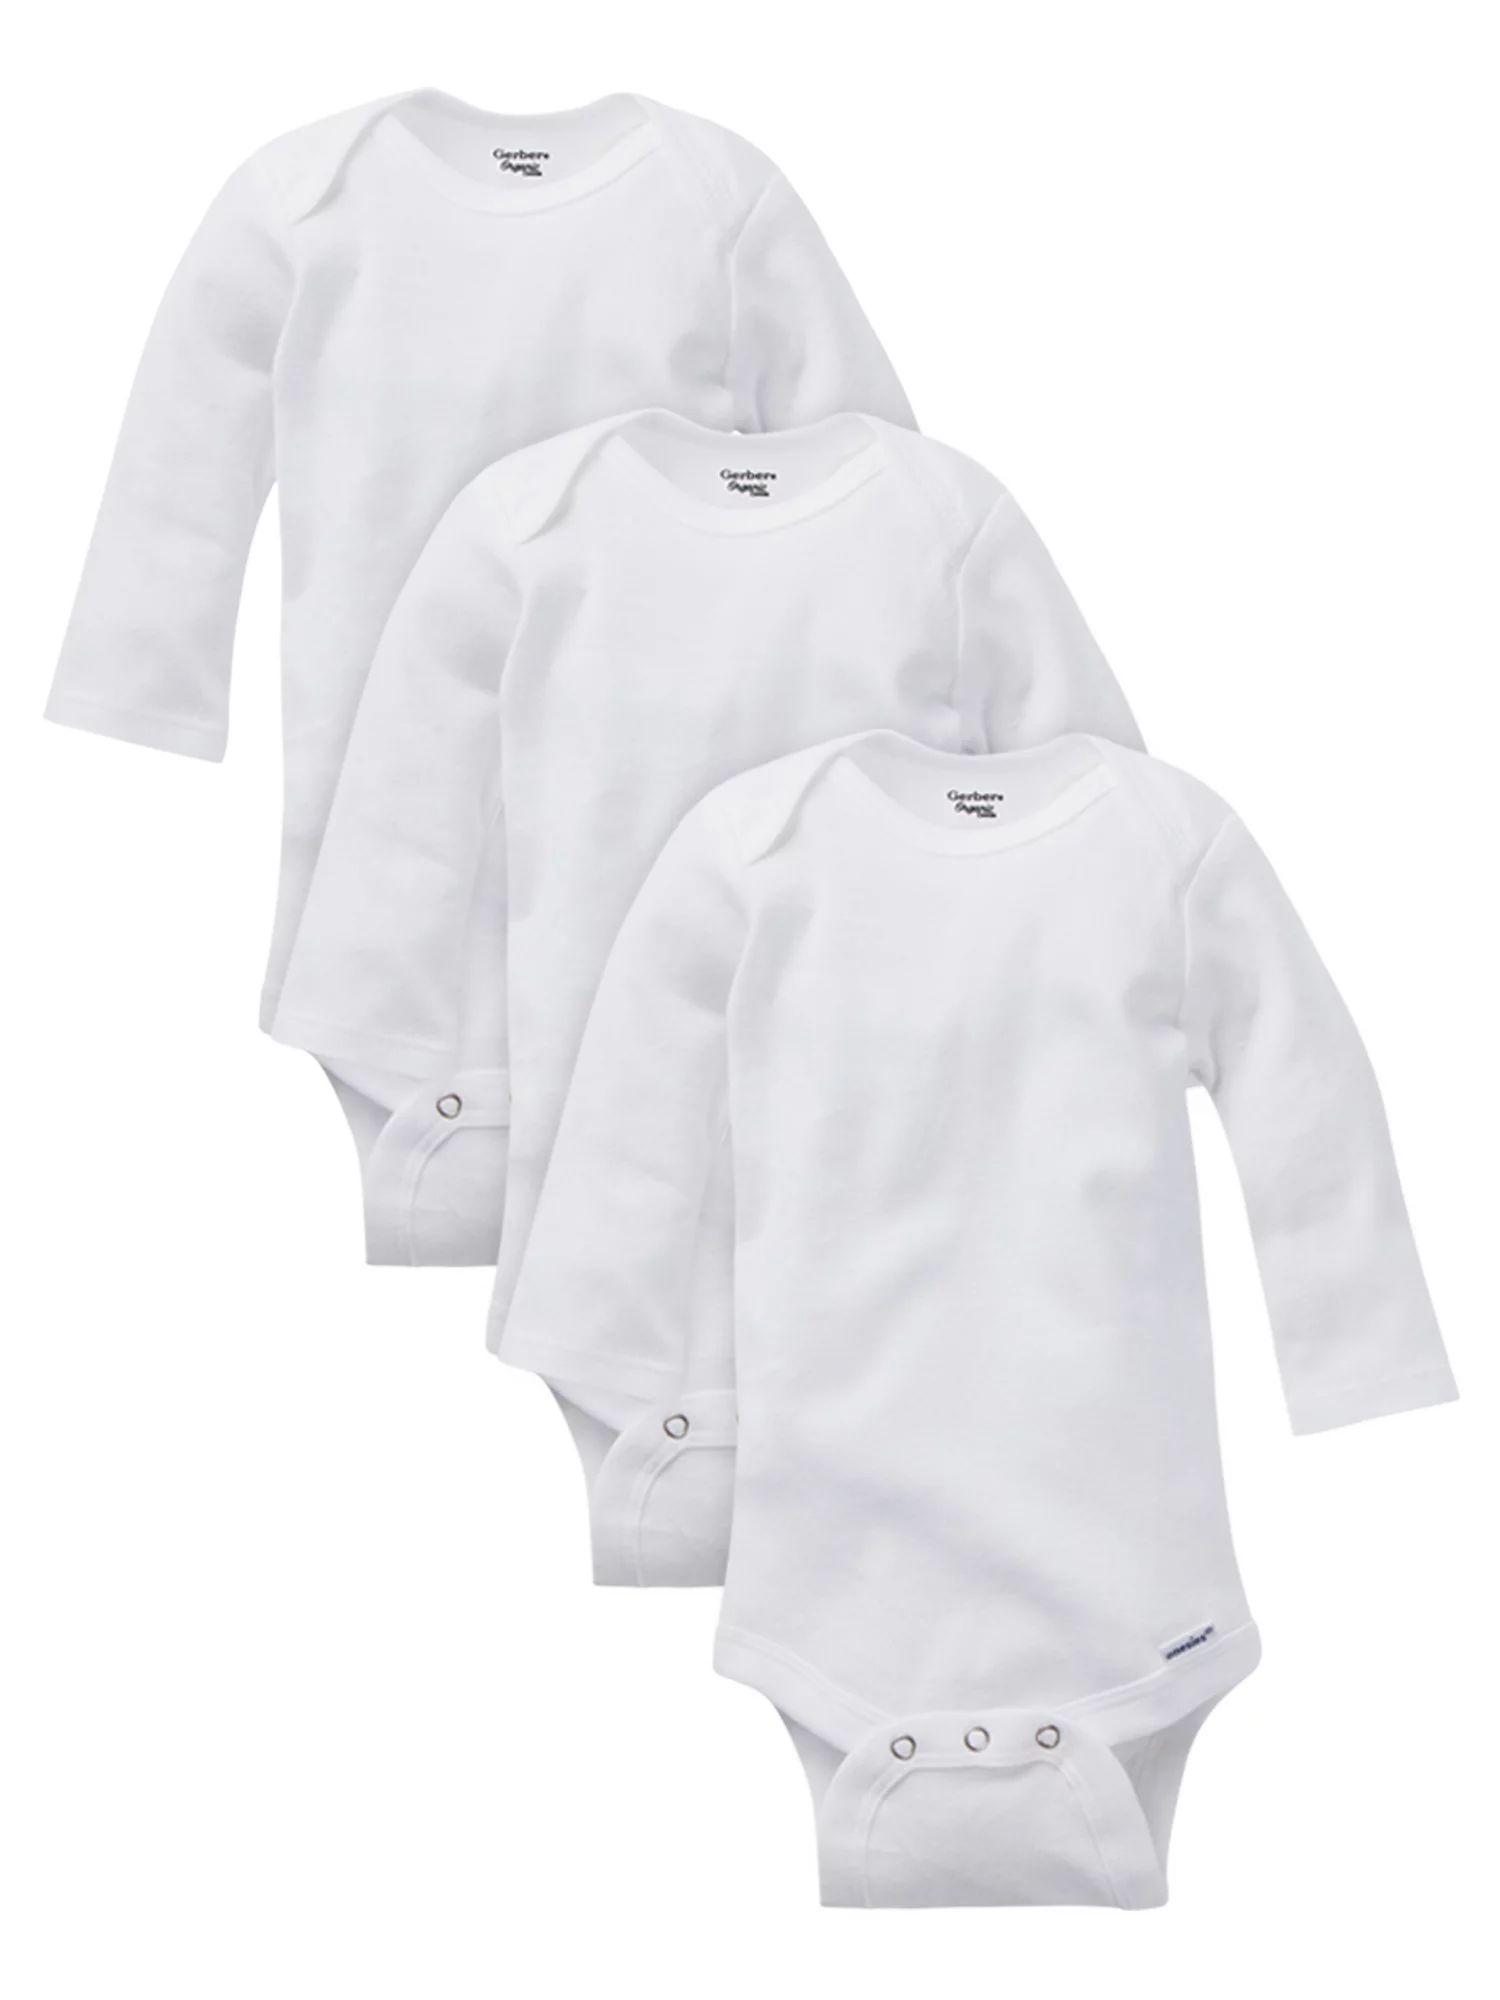 Gerber Baby Boy, Baby Girl, & Unisex Long Sleeve White Onesies Bodysuits, 3 Pack (Preemie-24M) - ... | Walmart (US)